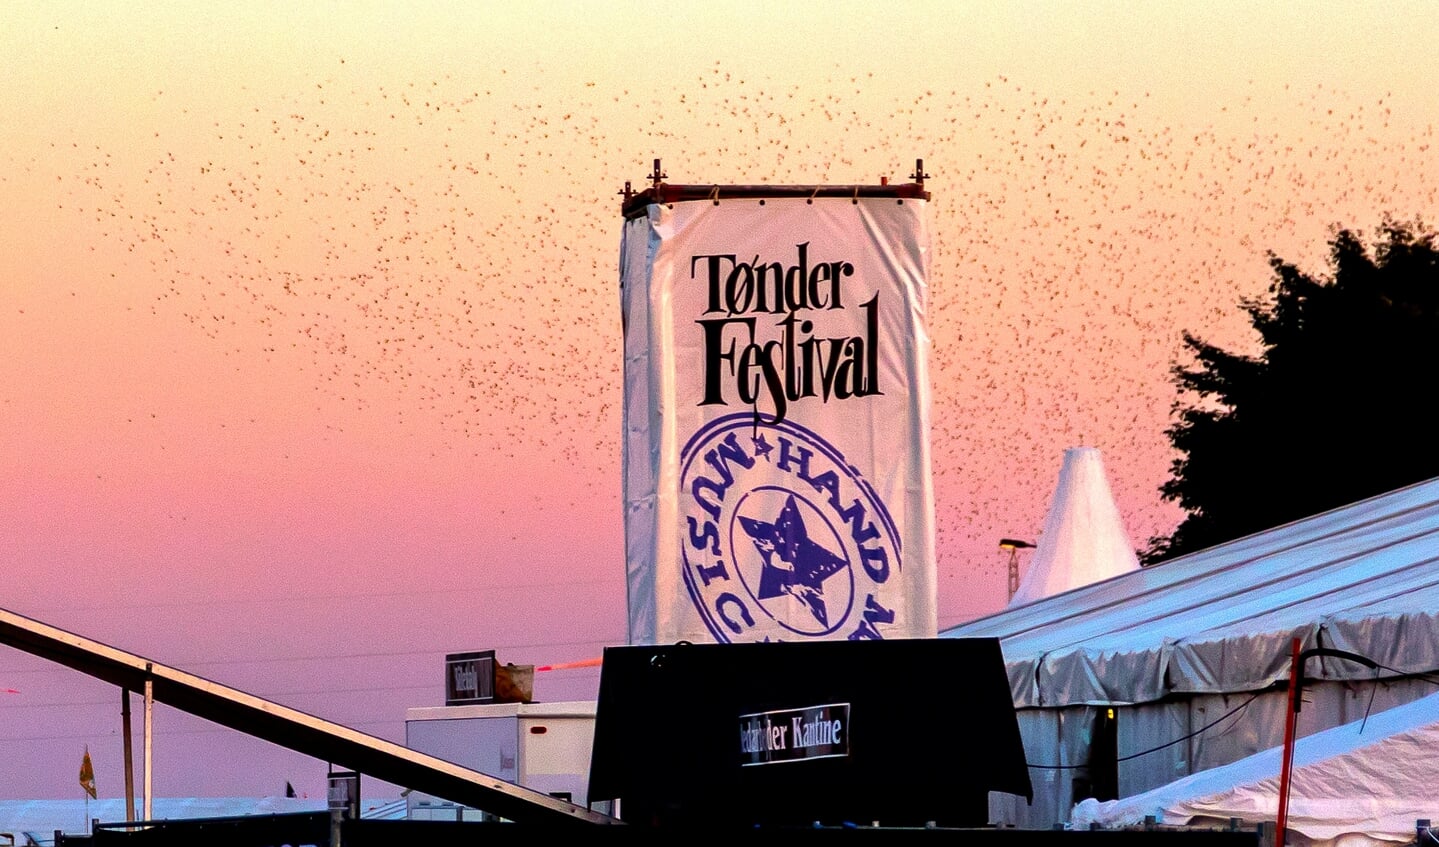 To års aflysninger har også betydning for den Tønder Festival, der møder gæsterne, når musikken igen spiller - måske i 2022. Foto: